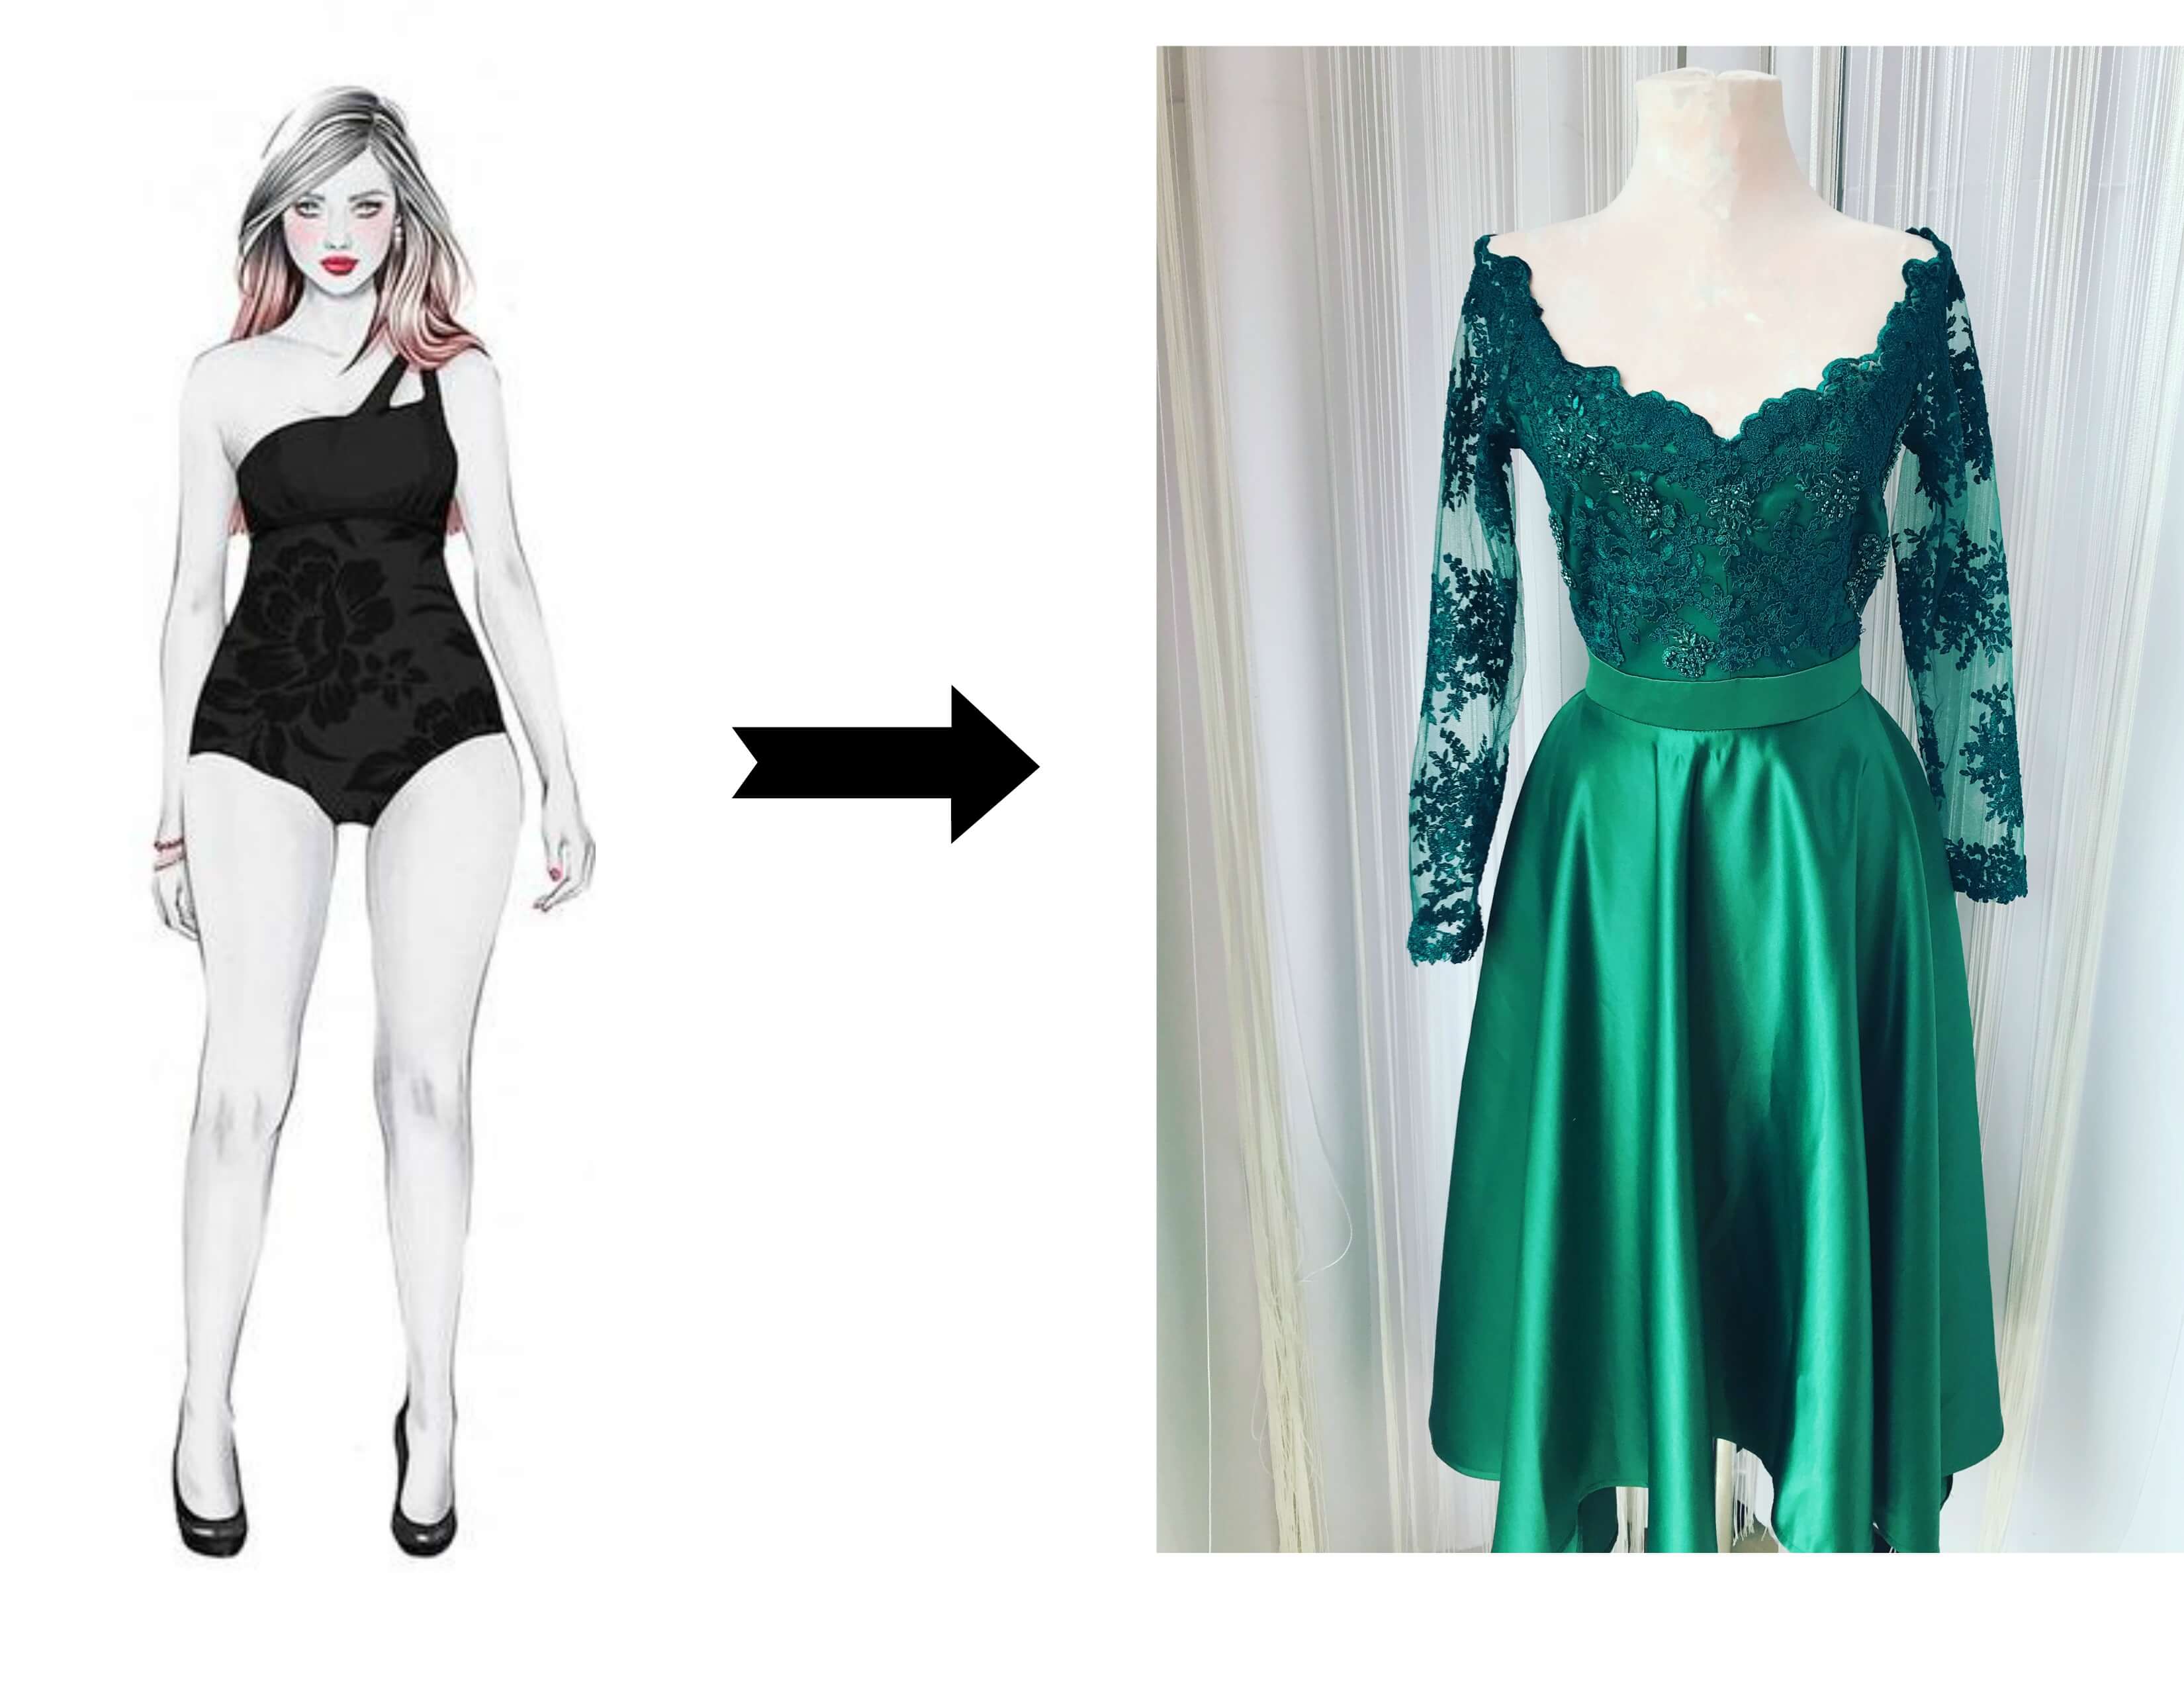 Cum alegi o rochie in functie de tipul corpului mar sau dreptunghi?